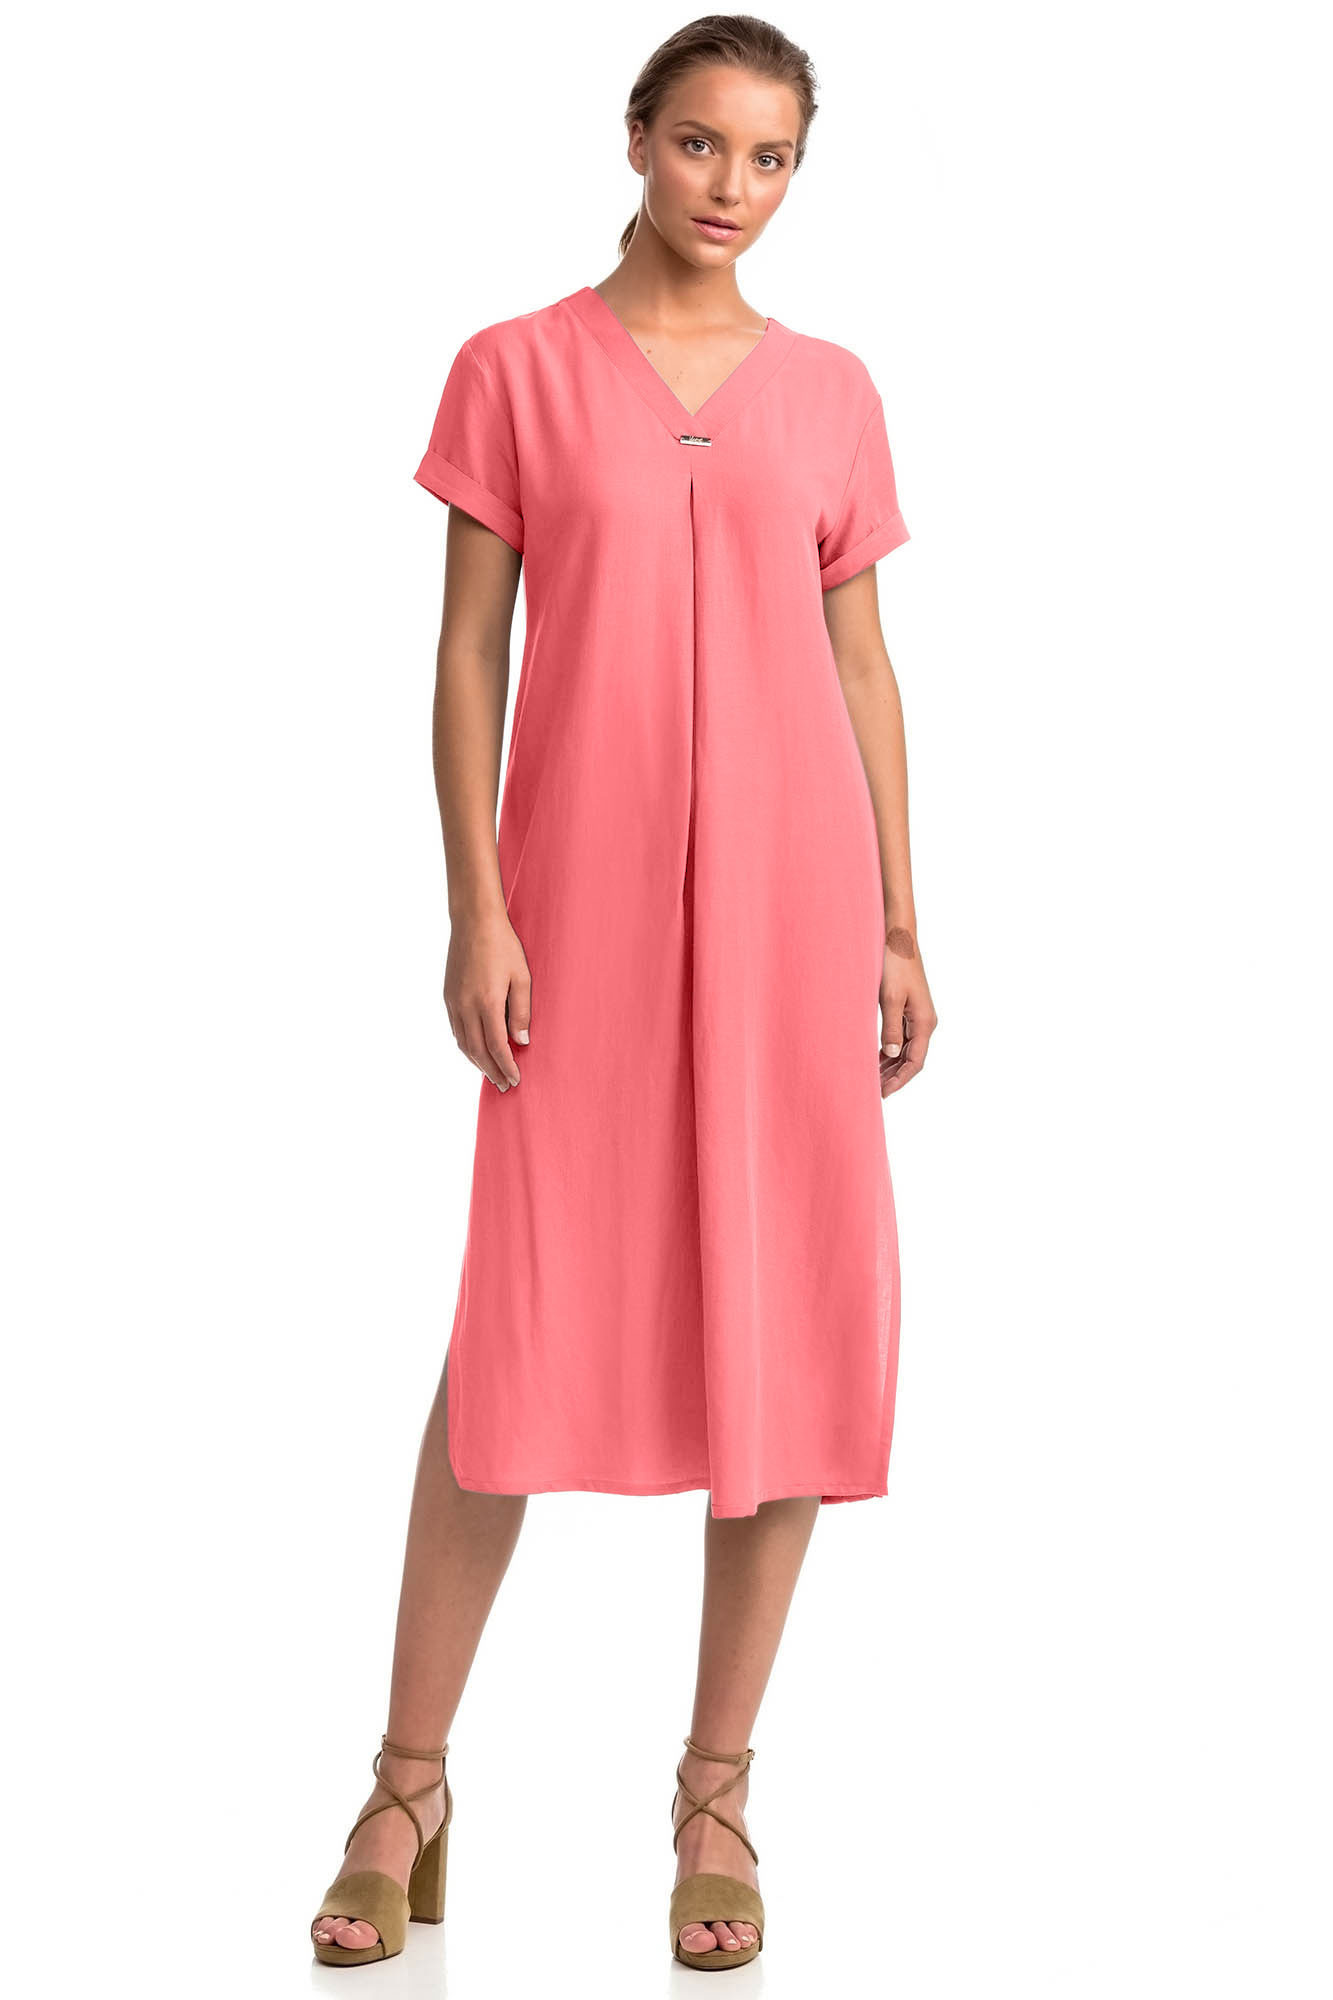 Vamp - Letní dámské šaty 14440 - Vamp coral sugar S